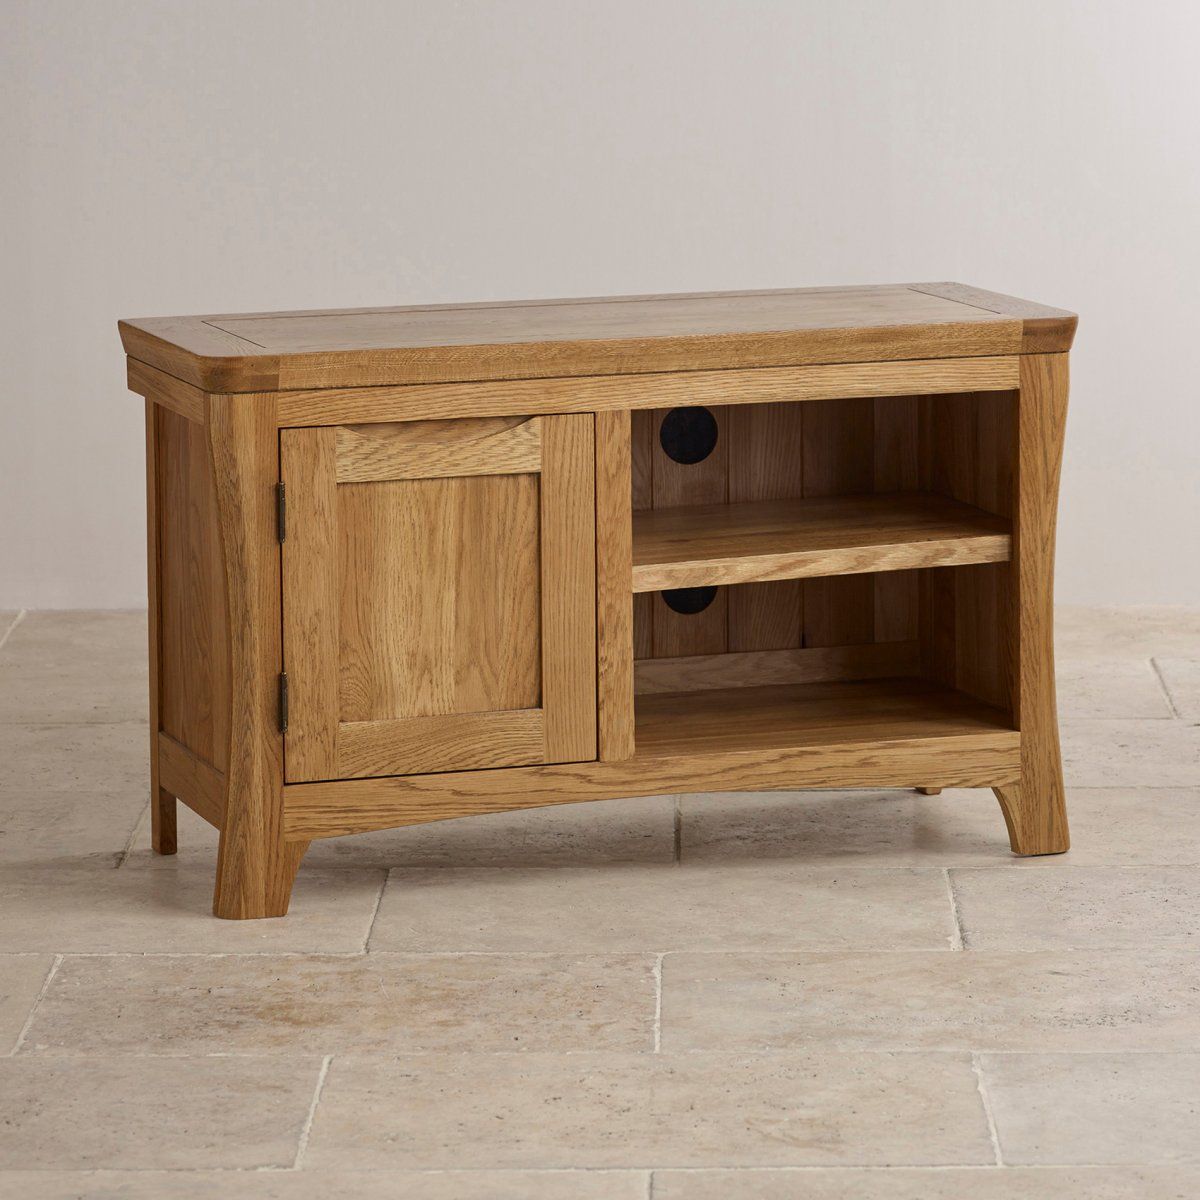 Orrick Tv Cabinet In Rustic Solid Oak | Oak Furniture Land Inside Oak Tv Stands Furniture (View 12 of 15)